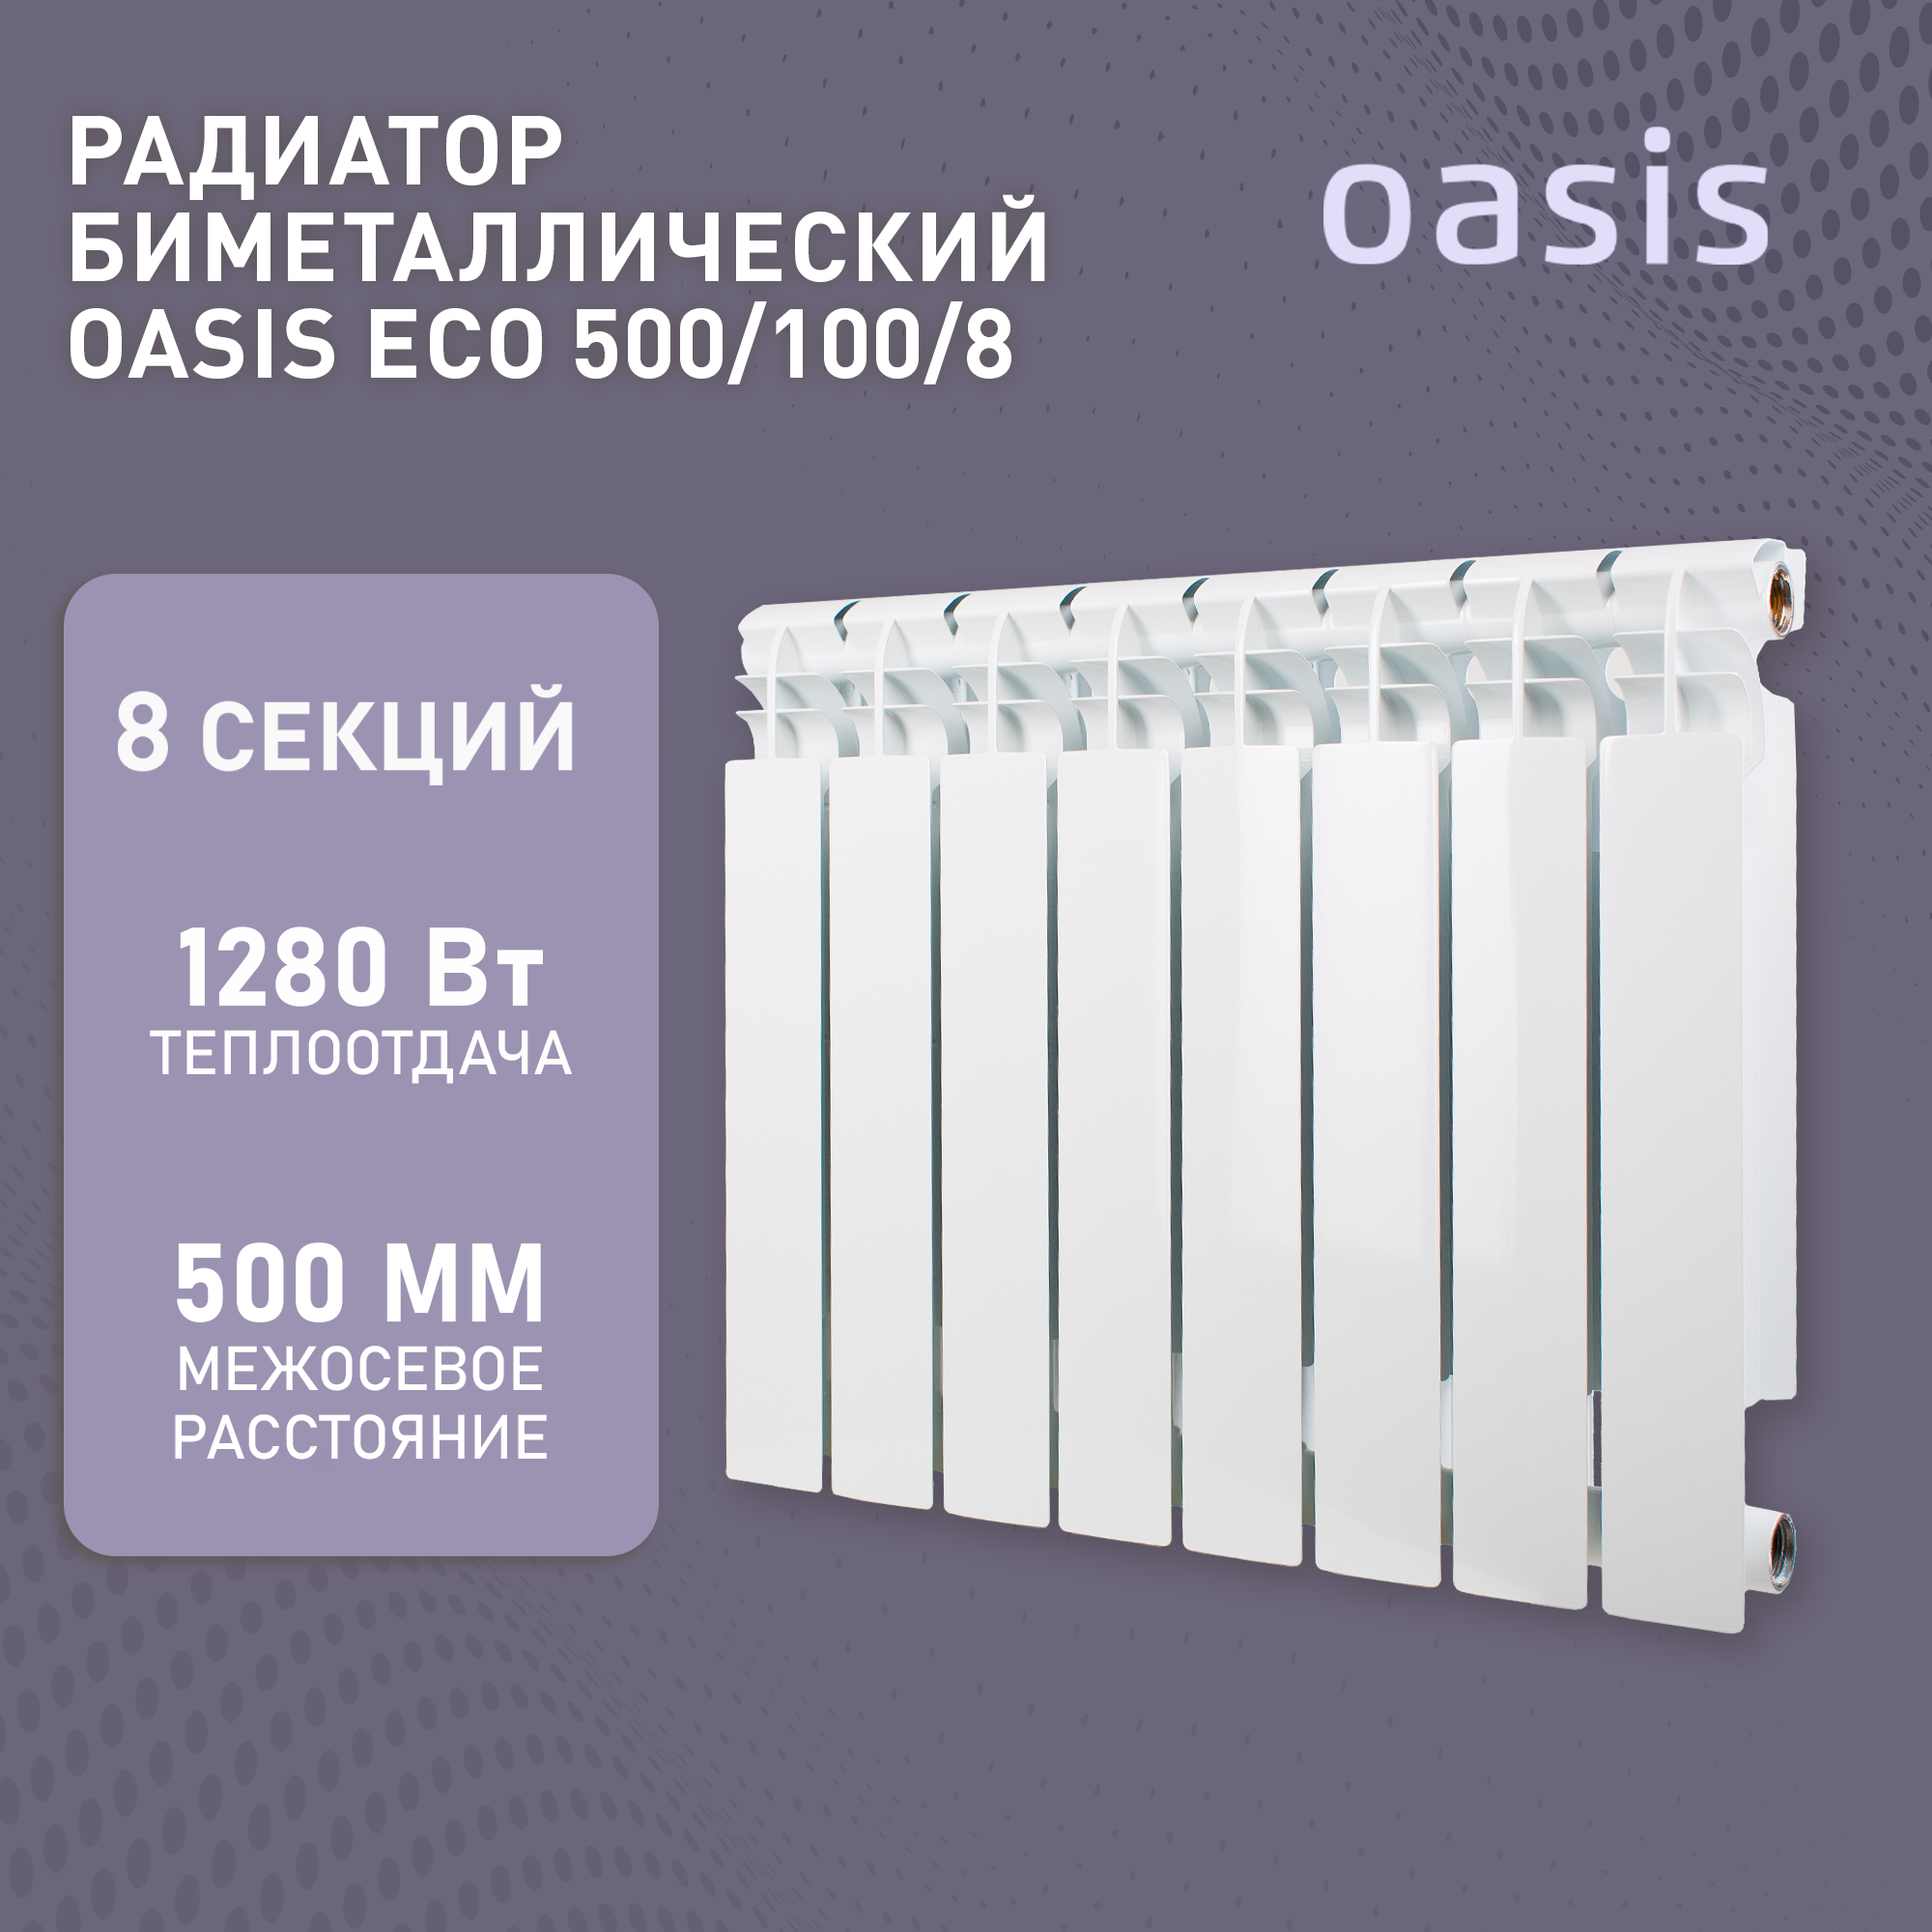 Радиатор отопления биметаллические Oasis Eco, модель 500/100/8, 8 секций / батарея